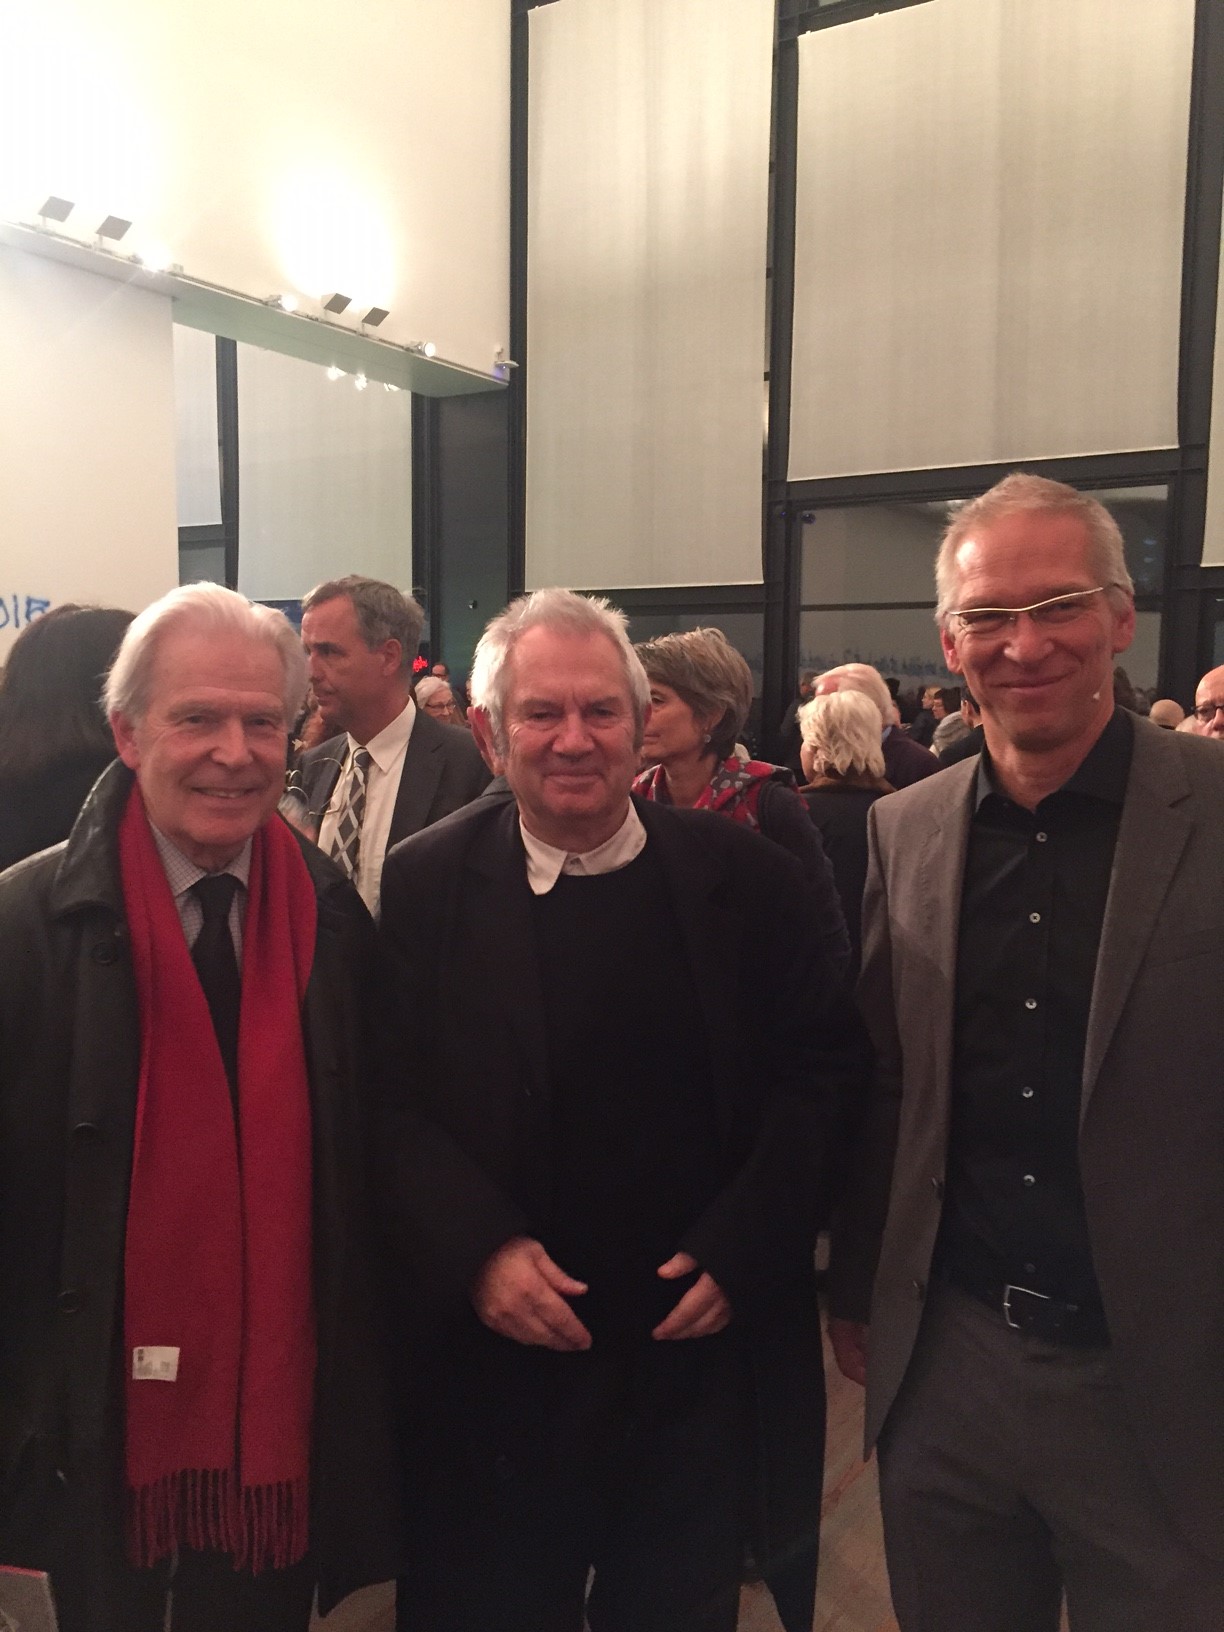 Ben Vautier, Robert Kopp Artpassions, Roland Wetzel, directeur Musée Tinguely. Vernissage au Musée Tinguely le 20 octobre 2015